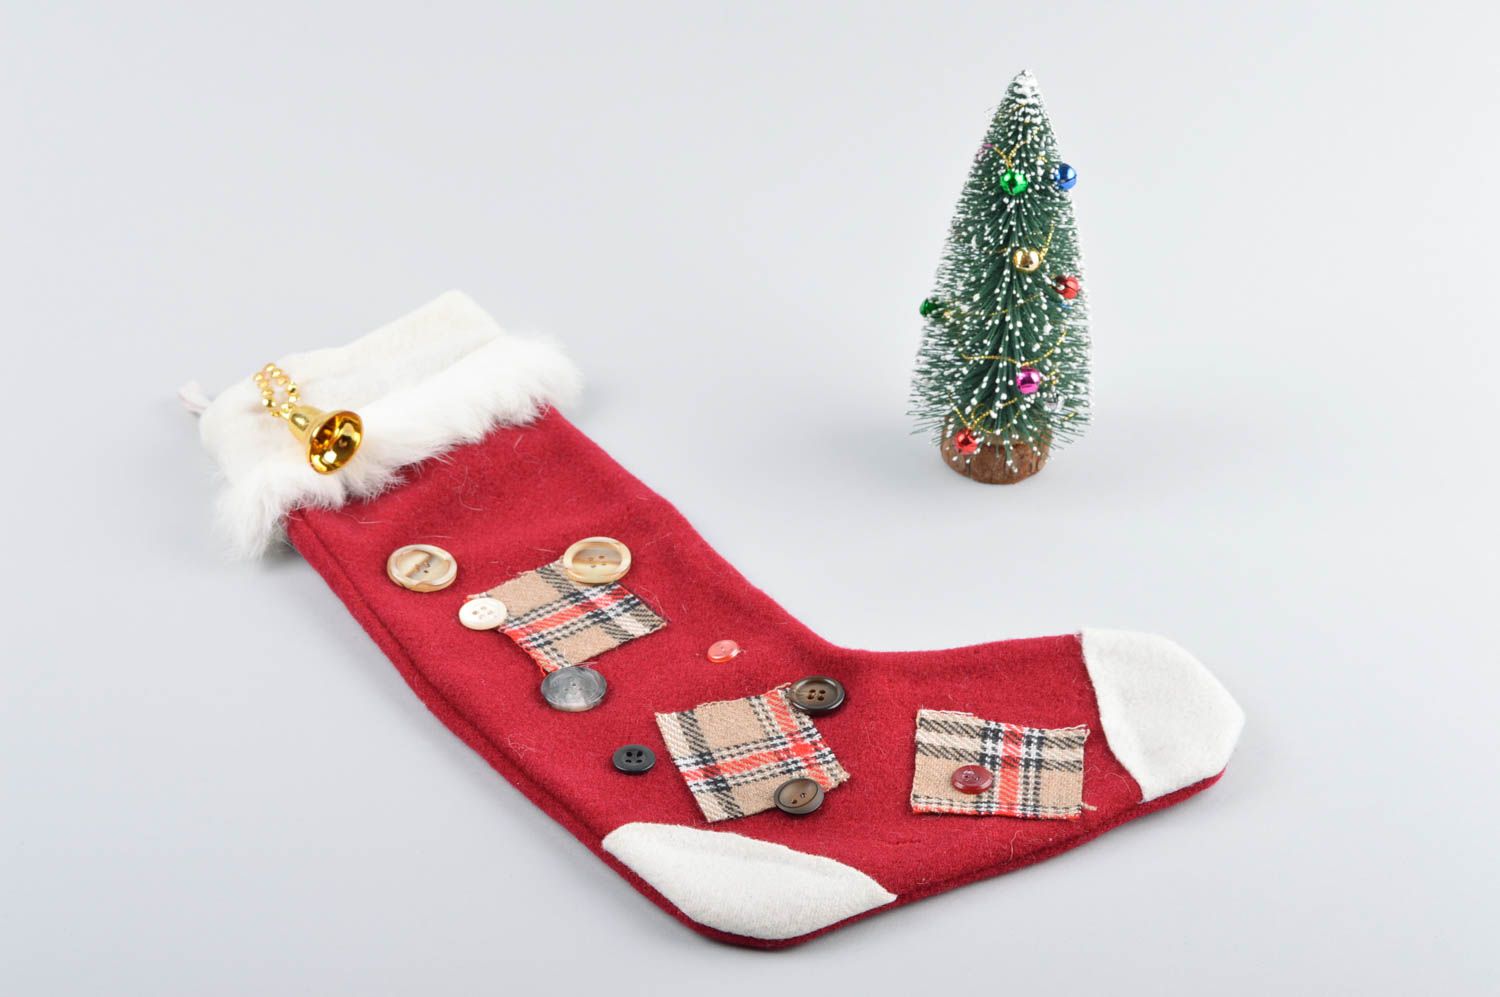 Socke zu Weihnachten handmade Deko Tannenbaum Schmuck Weihnachten Deko rot weiß foto 2